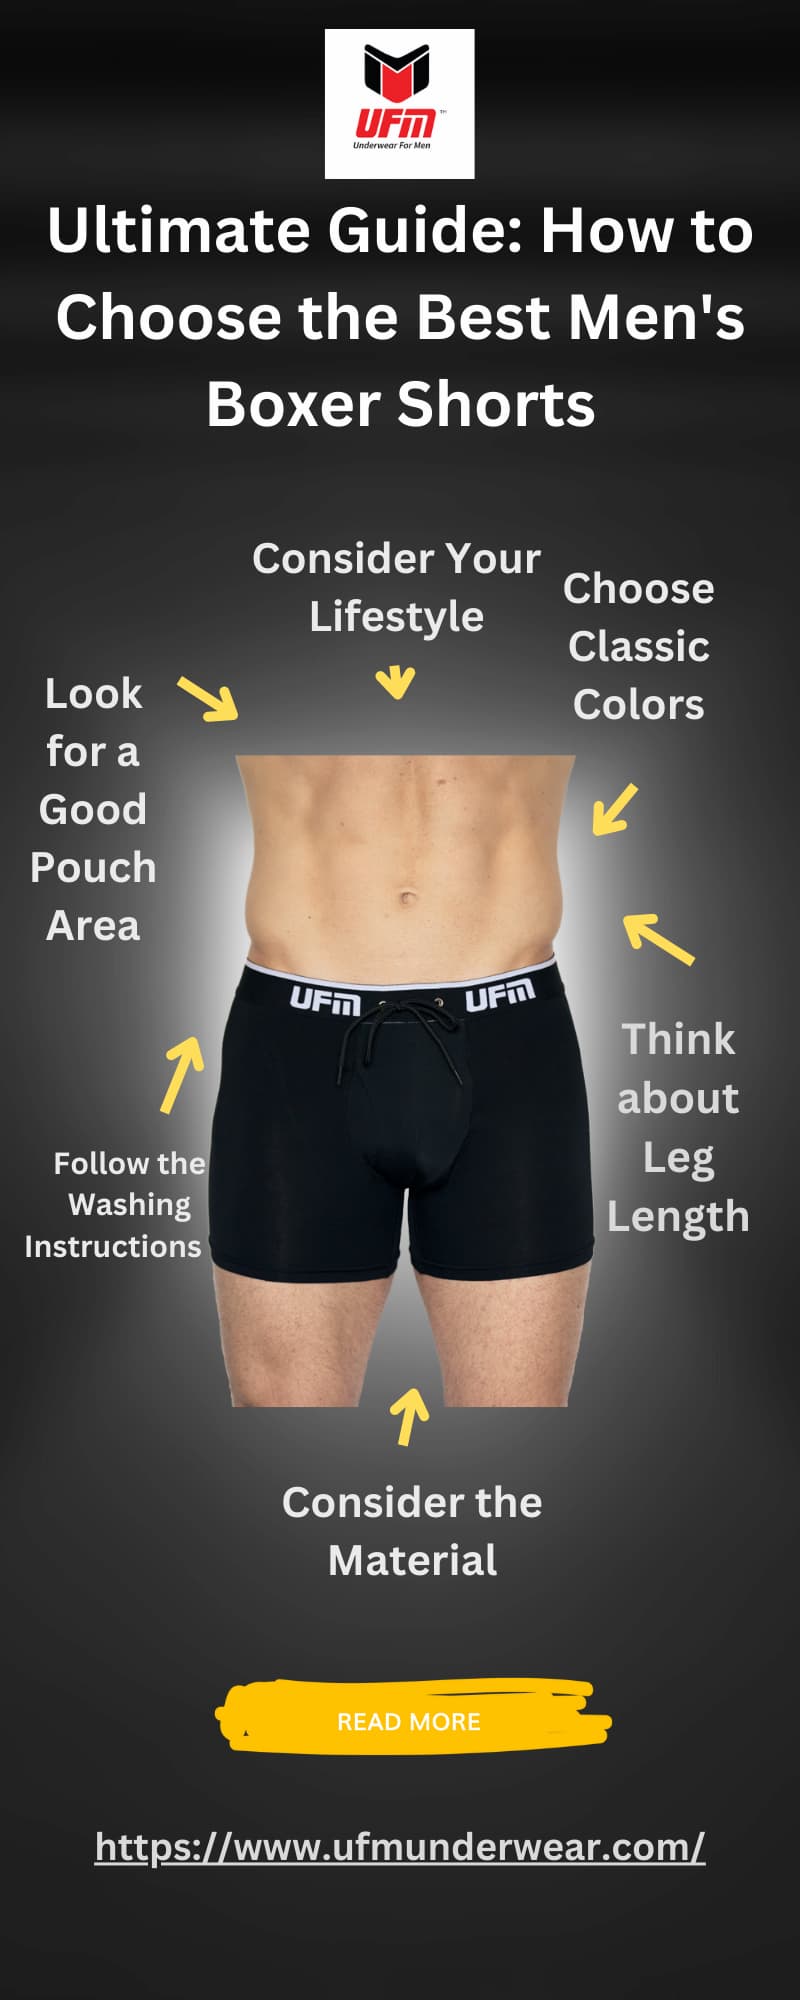 https://www.ufmunderwear.com/media/wysiwyg/Ultimate_Guide_How_to_Choose_the_Best_Men_s_Boxer_Shorts.jpg